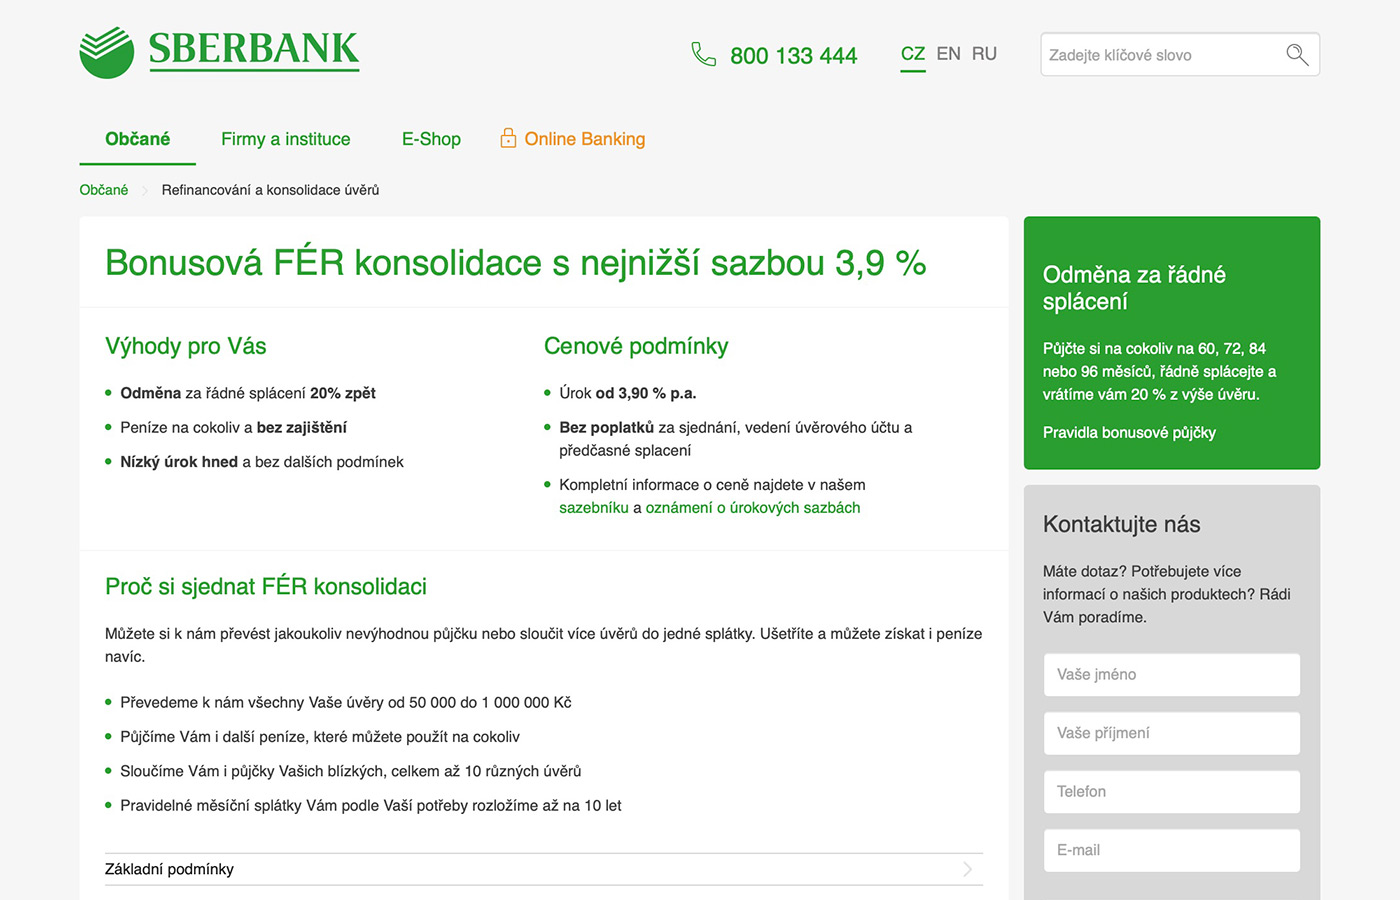 Webové stránky https://www.sberbankcz.cz/obcane/refinancovani-a-konsolidace-uveru